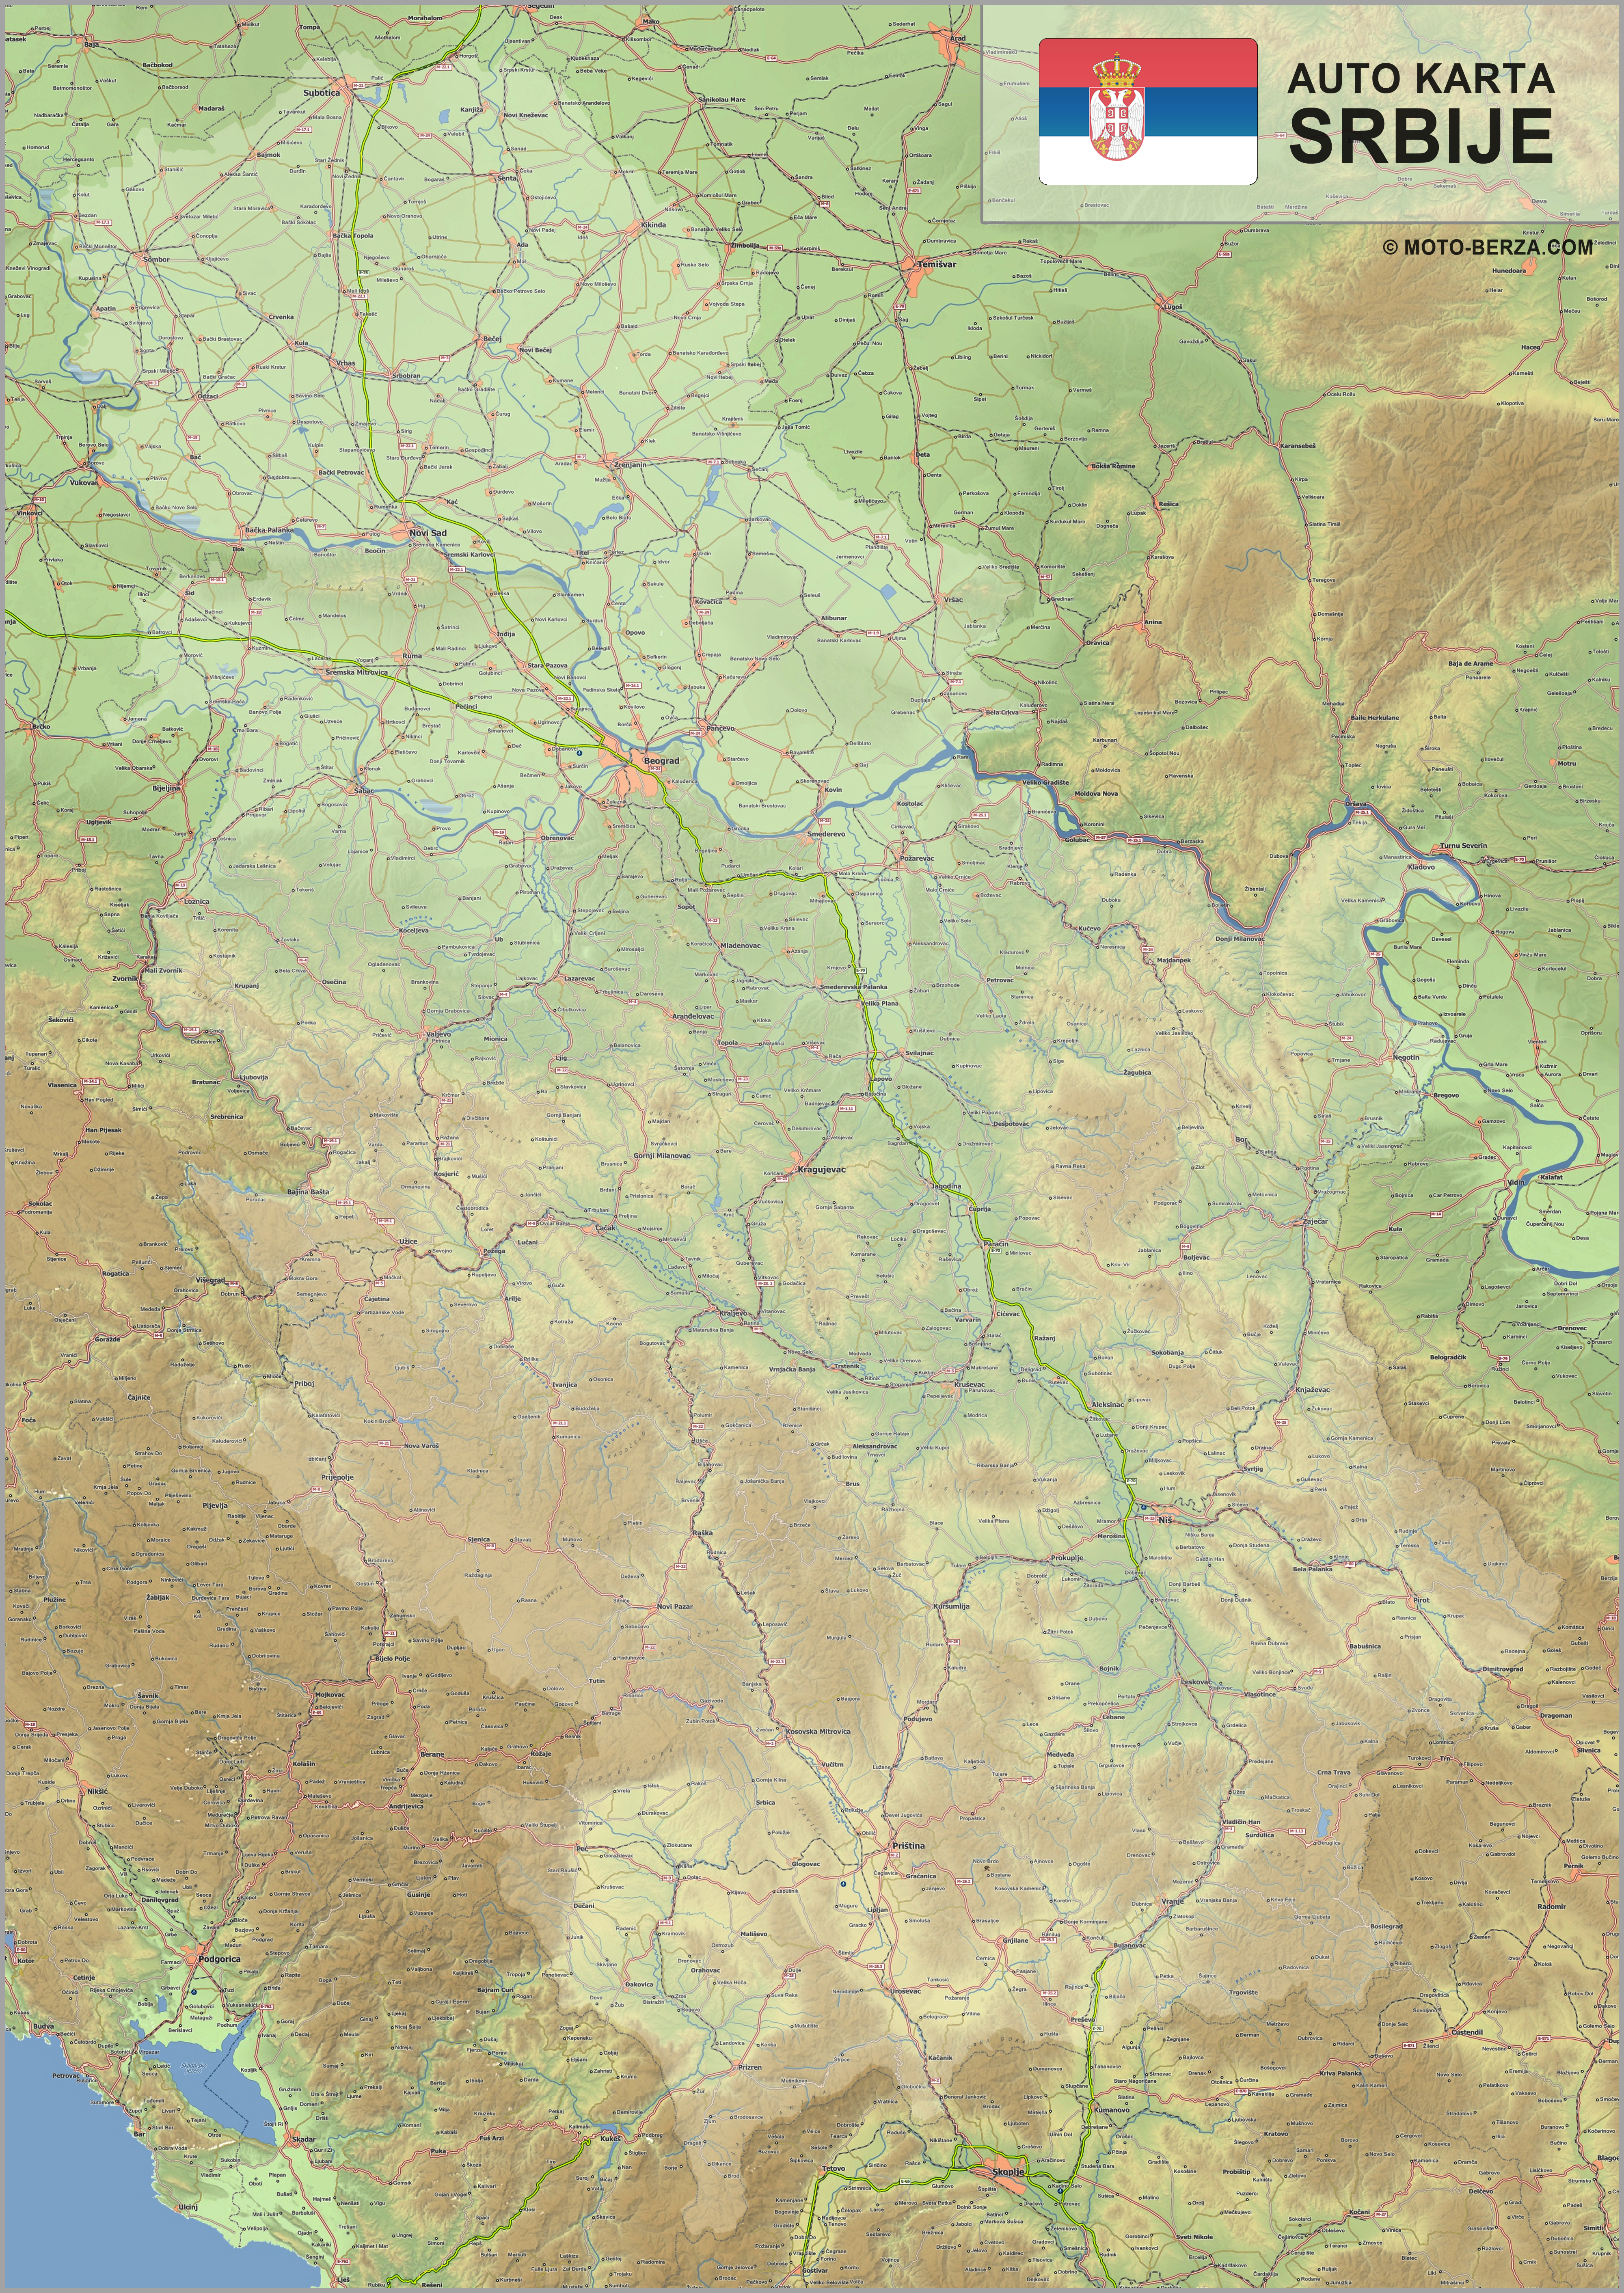 mapa zapadne srbije Mapa srbije   Auto karta Srbije   Geografska karta sa putevima mapa zapadne srbije